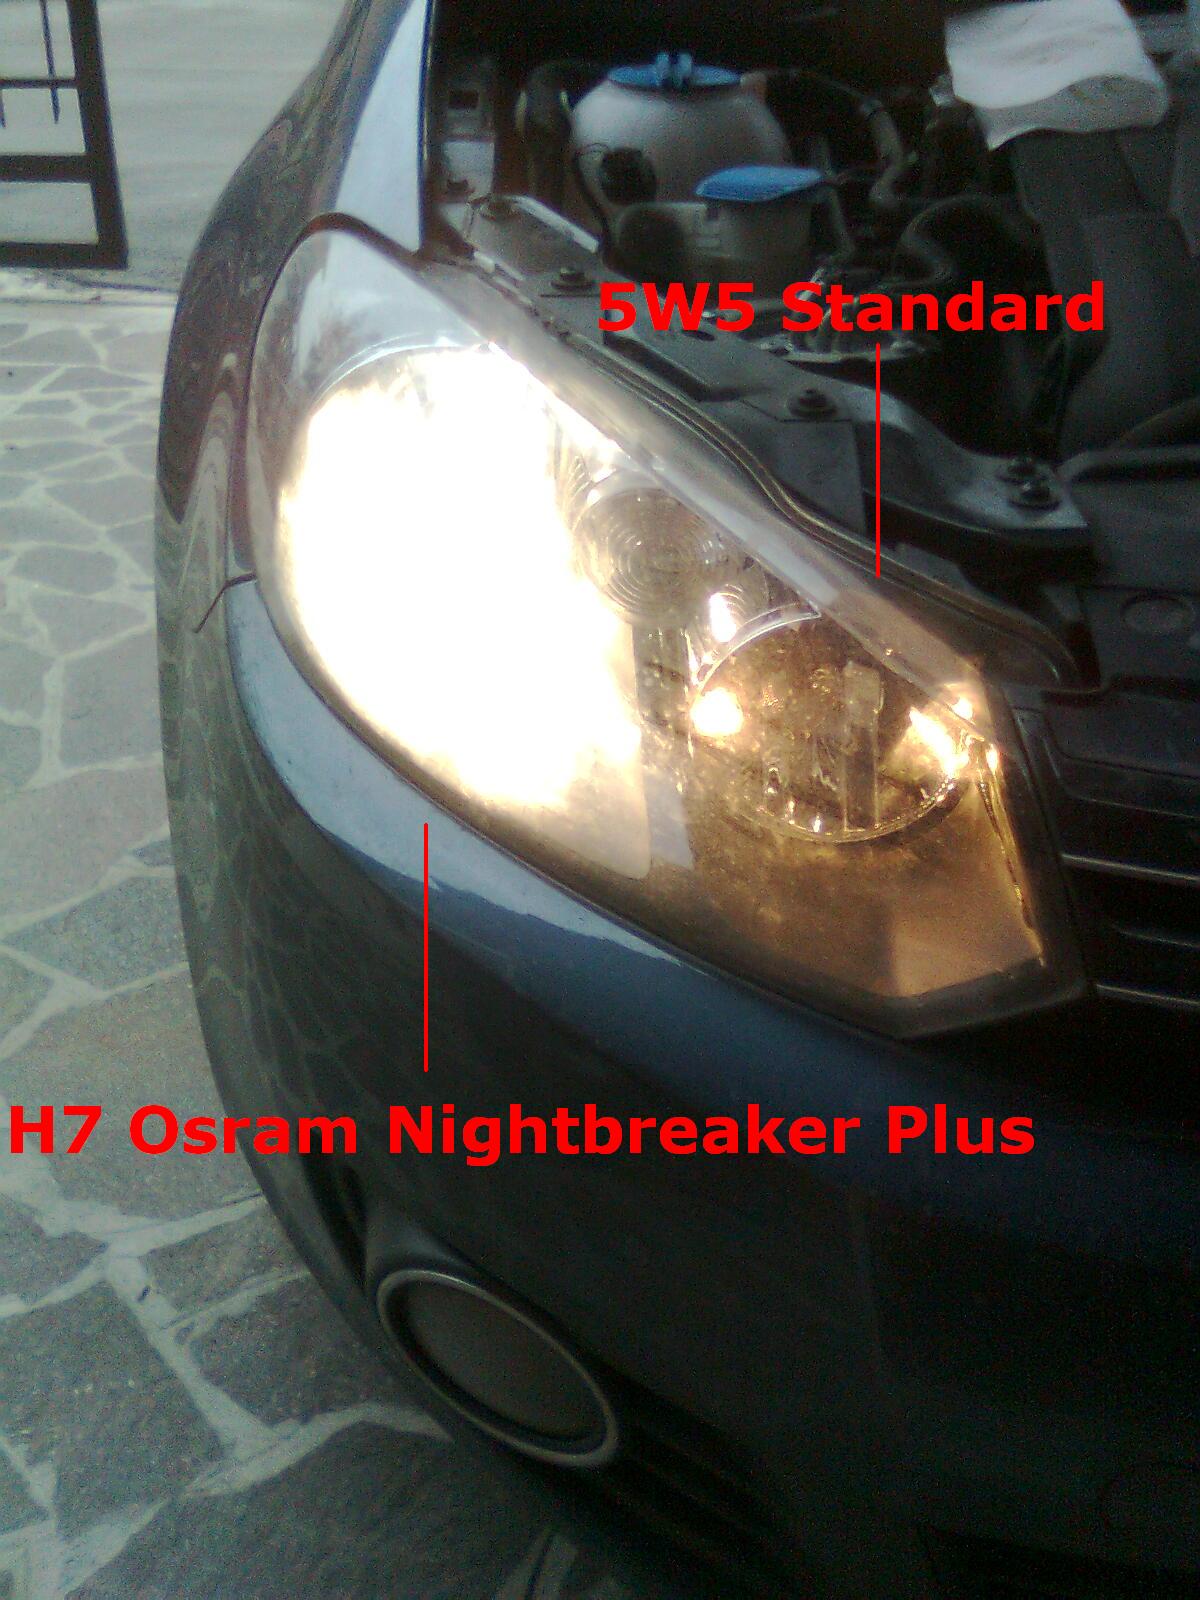 Faro anteriore dx con H7 Nightbreaker Plus e 5W5 standard
